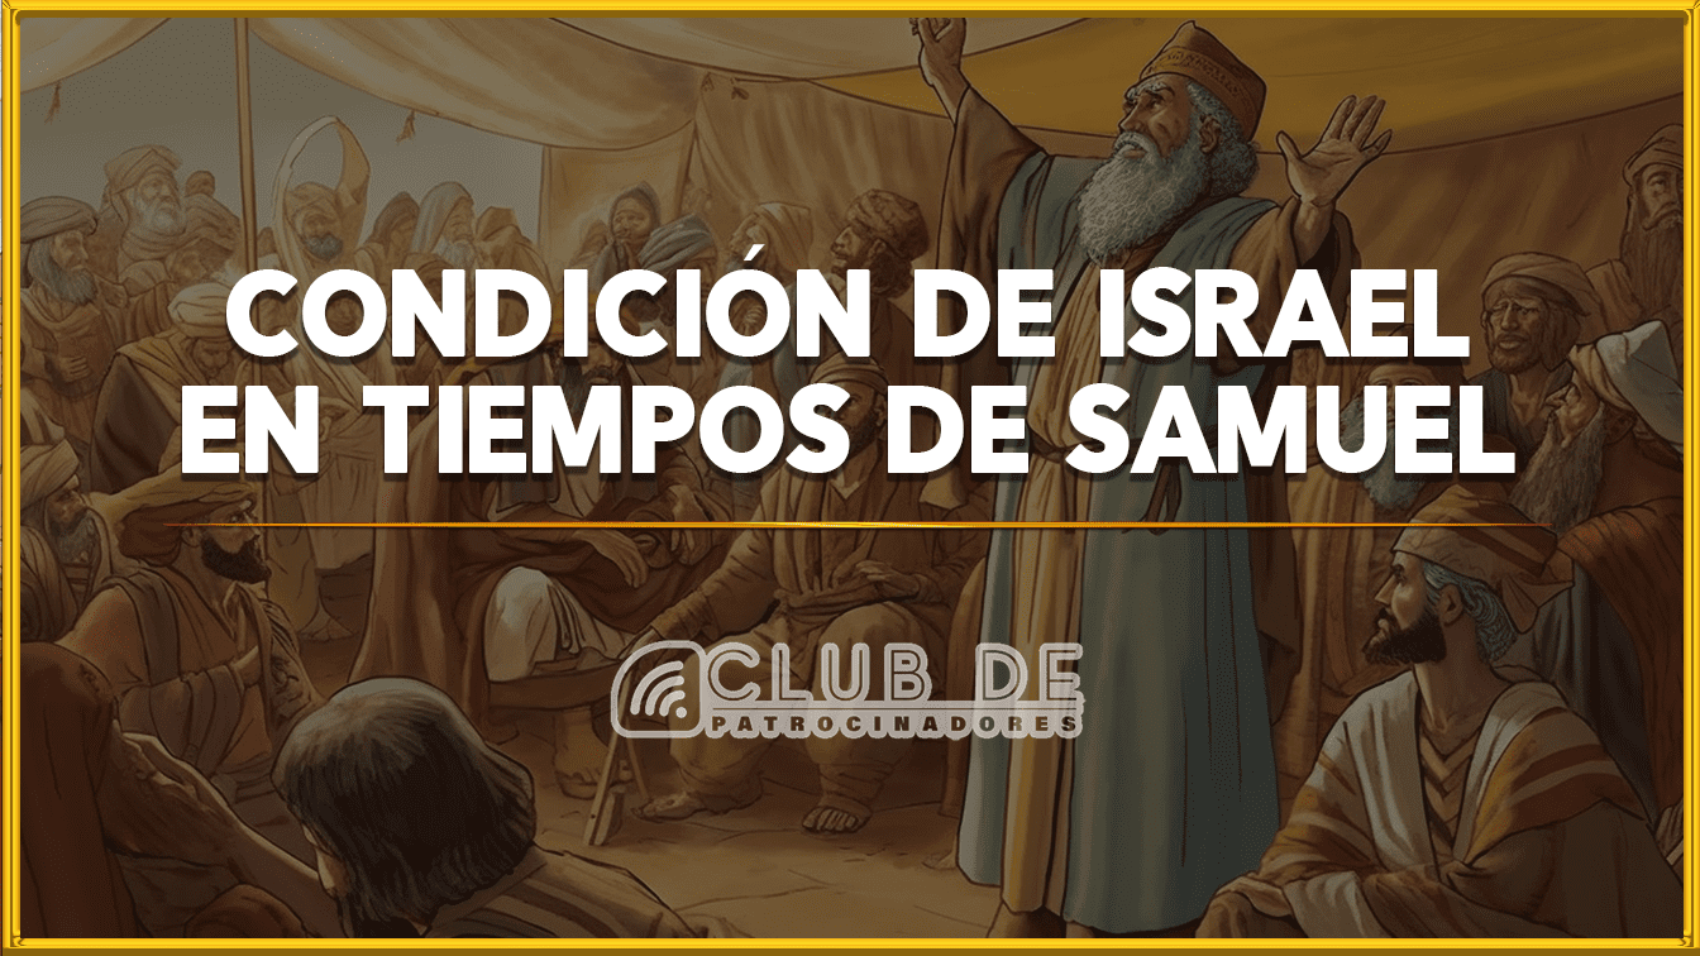 Condición de Israel en tiempos de Samuel 1920 x 1080